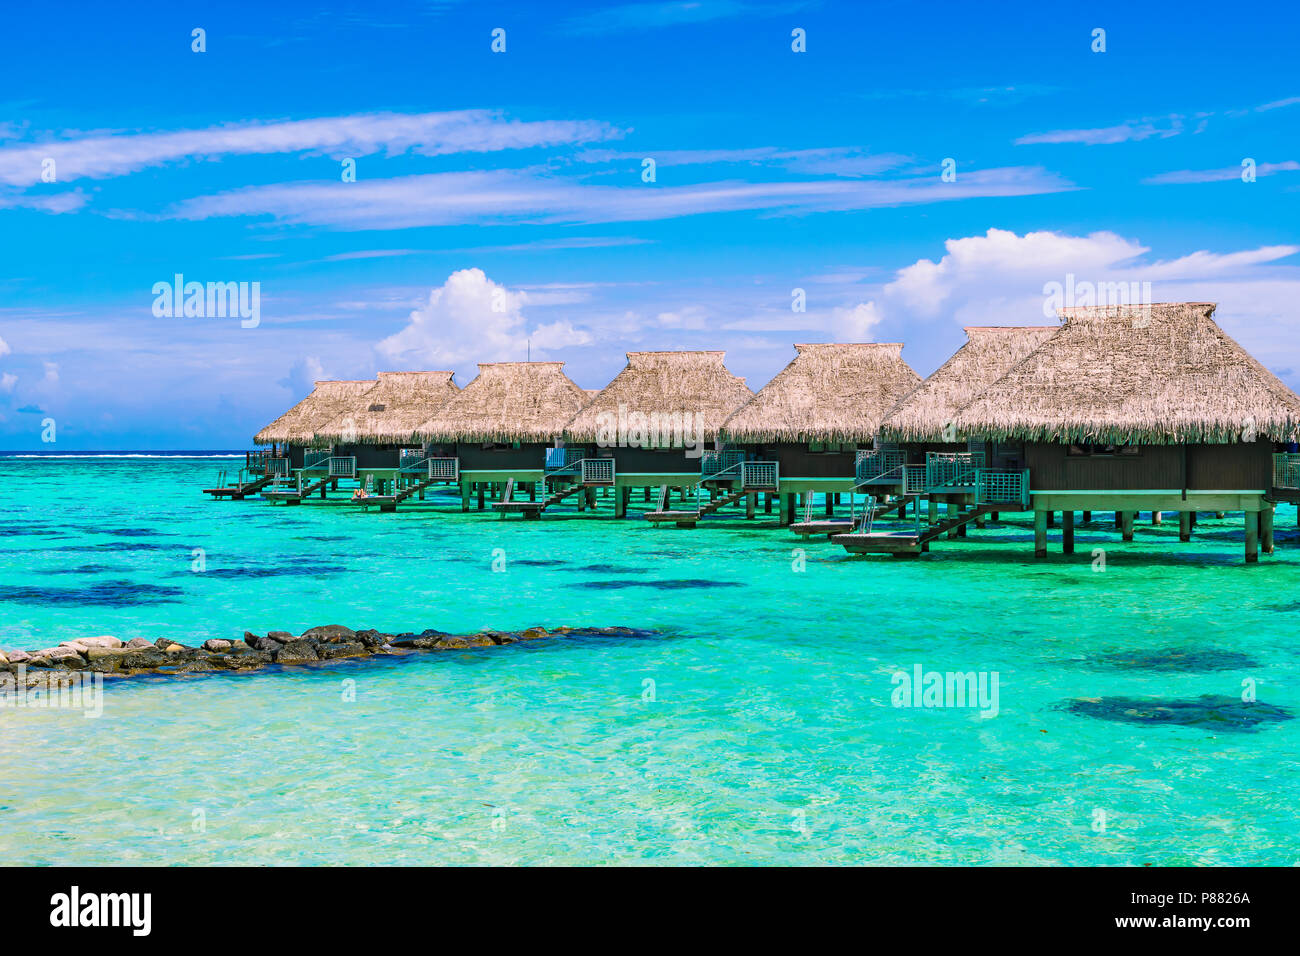 Luxury Beach reisen urlaub Konzept: Überwasser Bungalows auf türkisblaue lagune Ocean Coral Reef in der Nähe des Strandes. Stockfoto